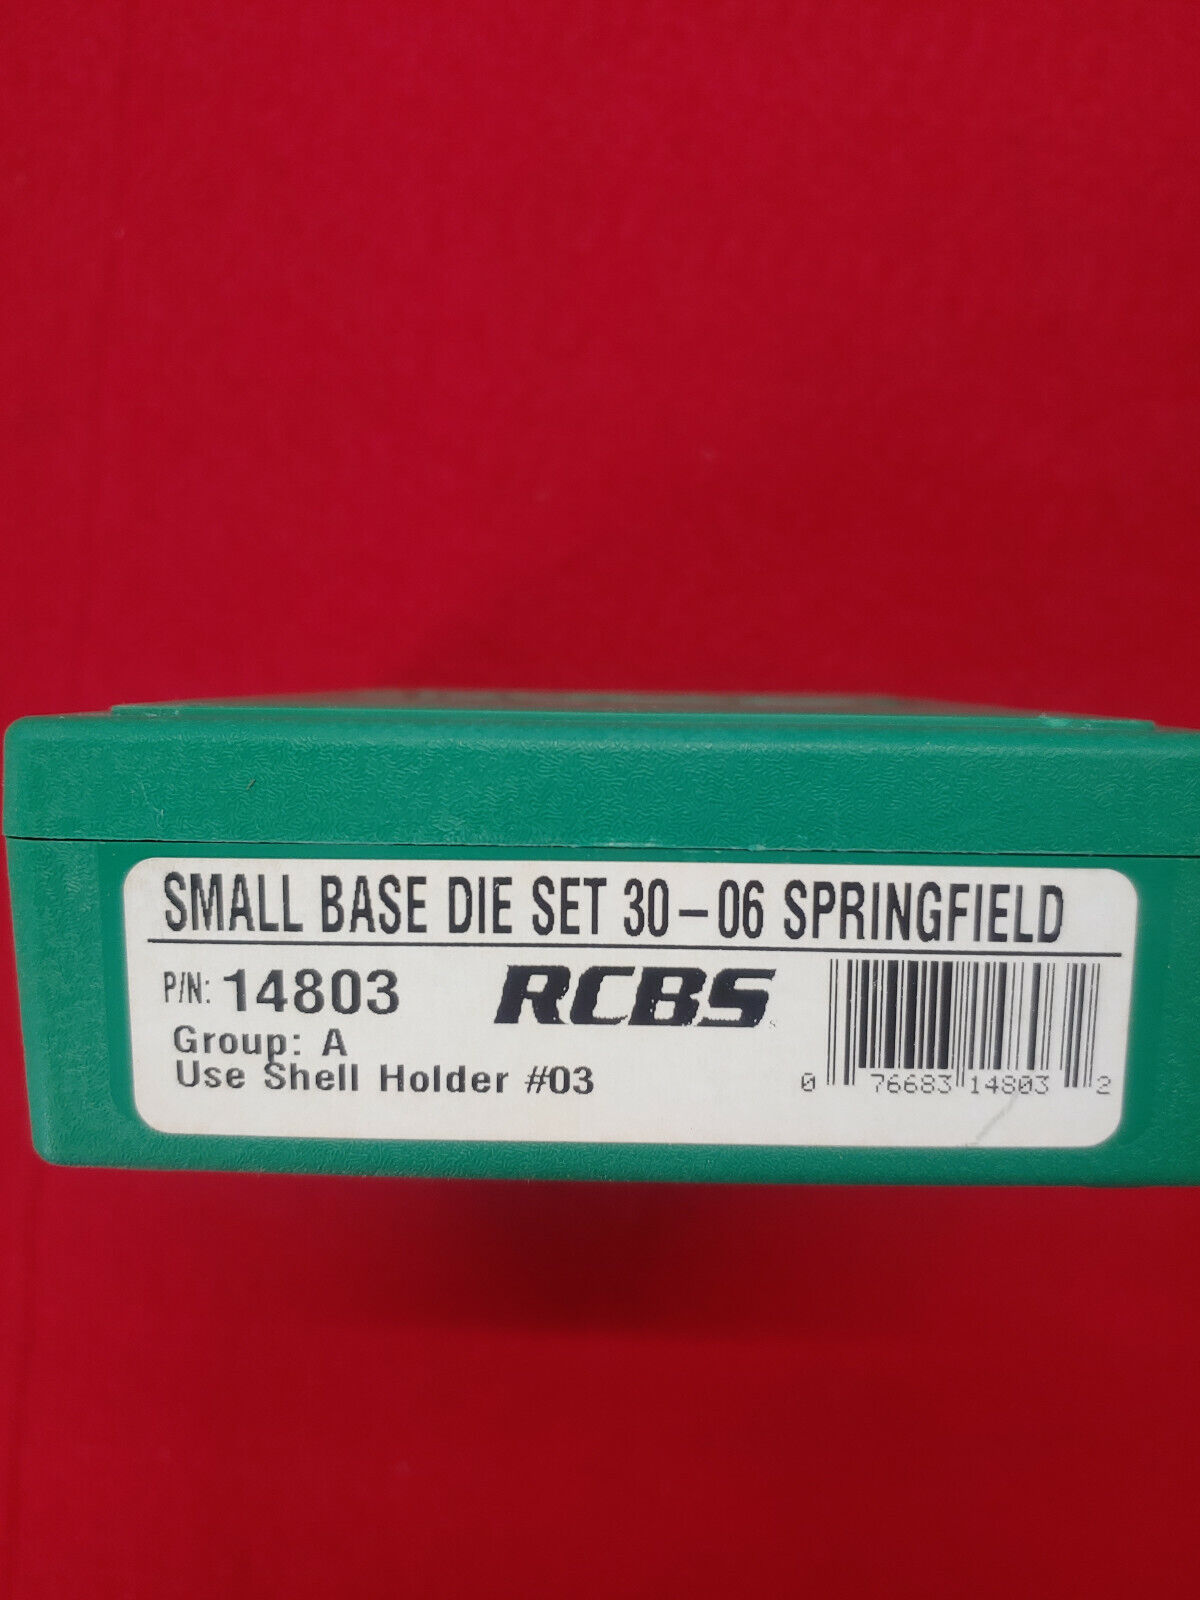 RCBS Series A Small-Base Die 30-06 Mfg# 14803